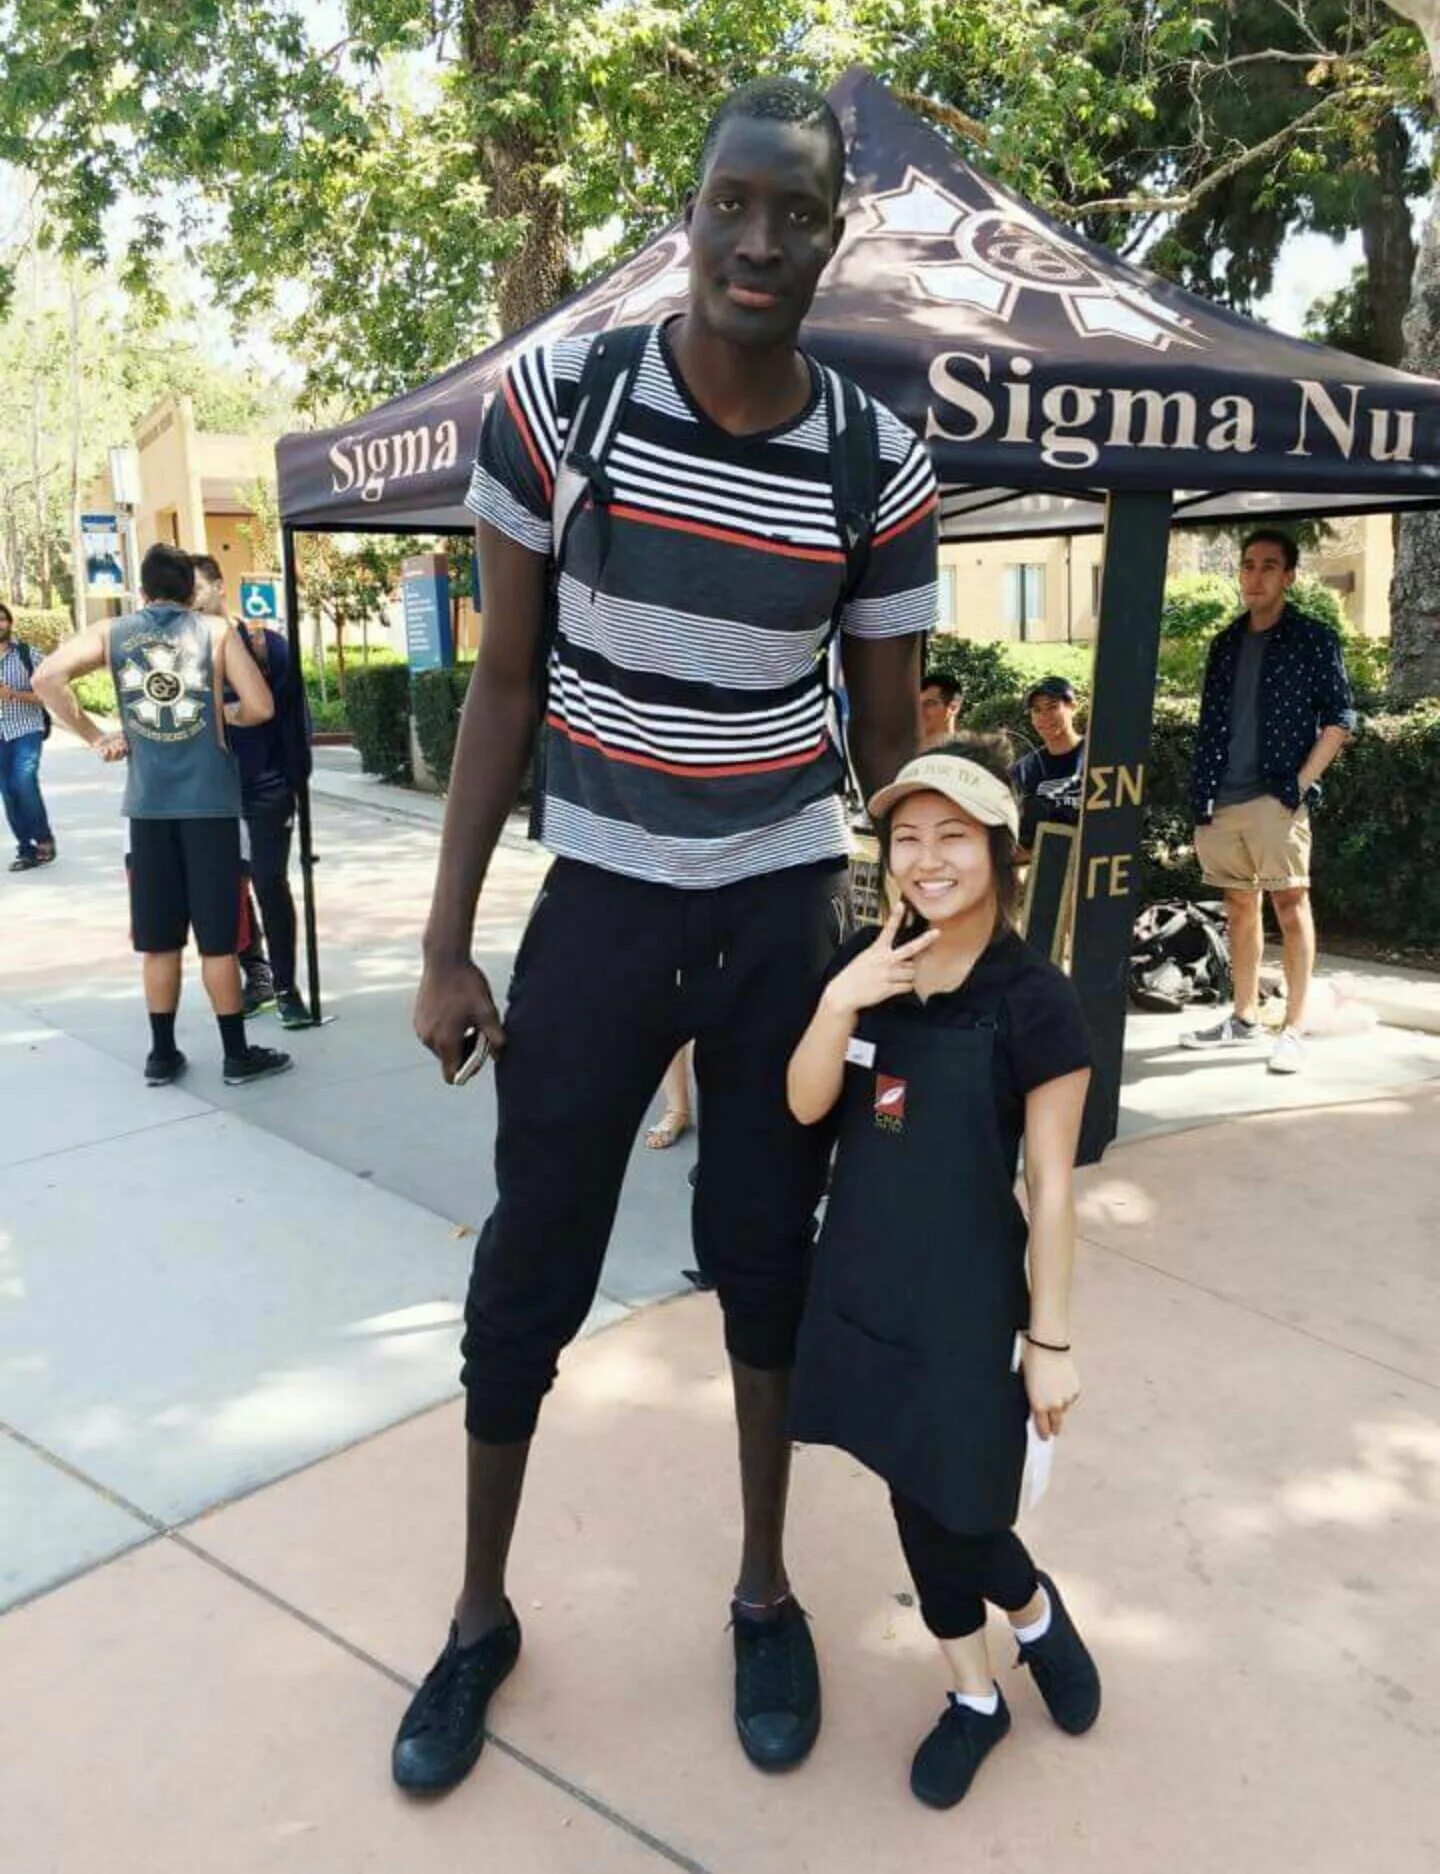 Tall whites. Высокий негр. Афроамериканцы высокие. Высокий человек.